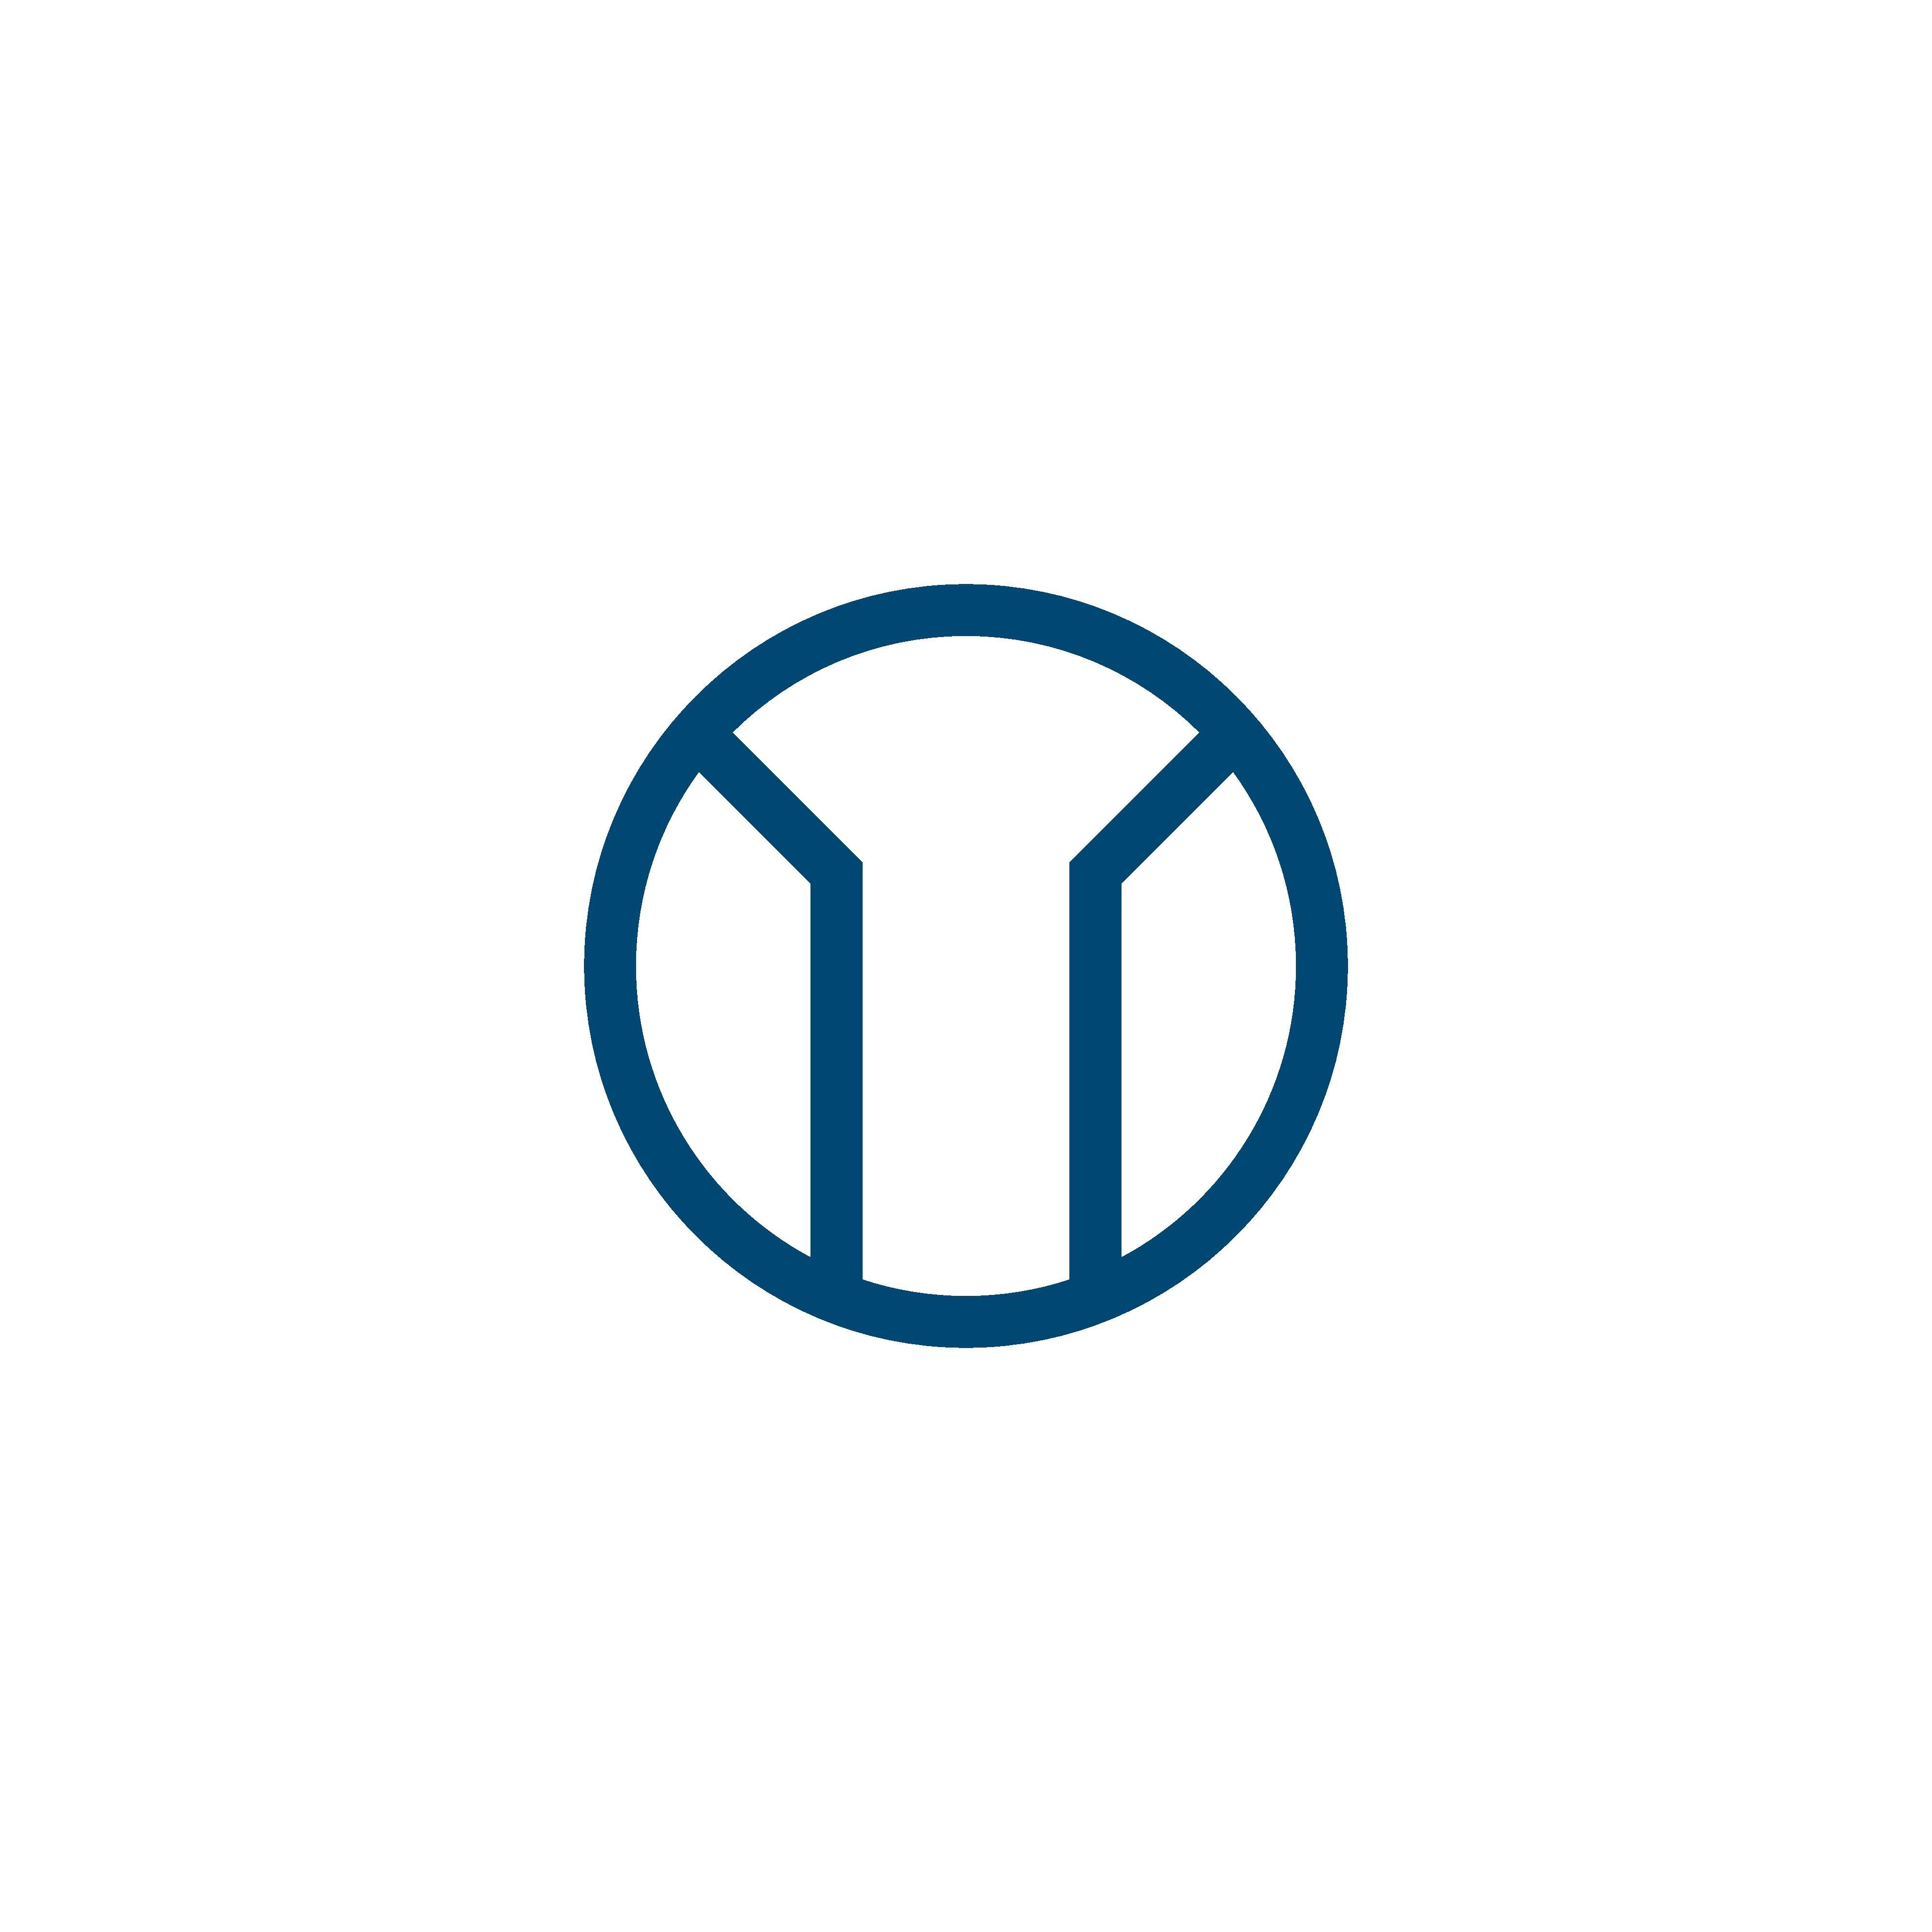 M Circle Logo - M letter logo vector. TM letter logo vector. Circle logo | LOGO ...